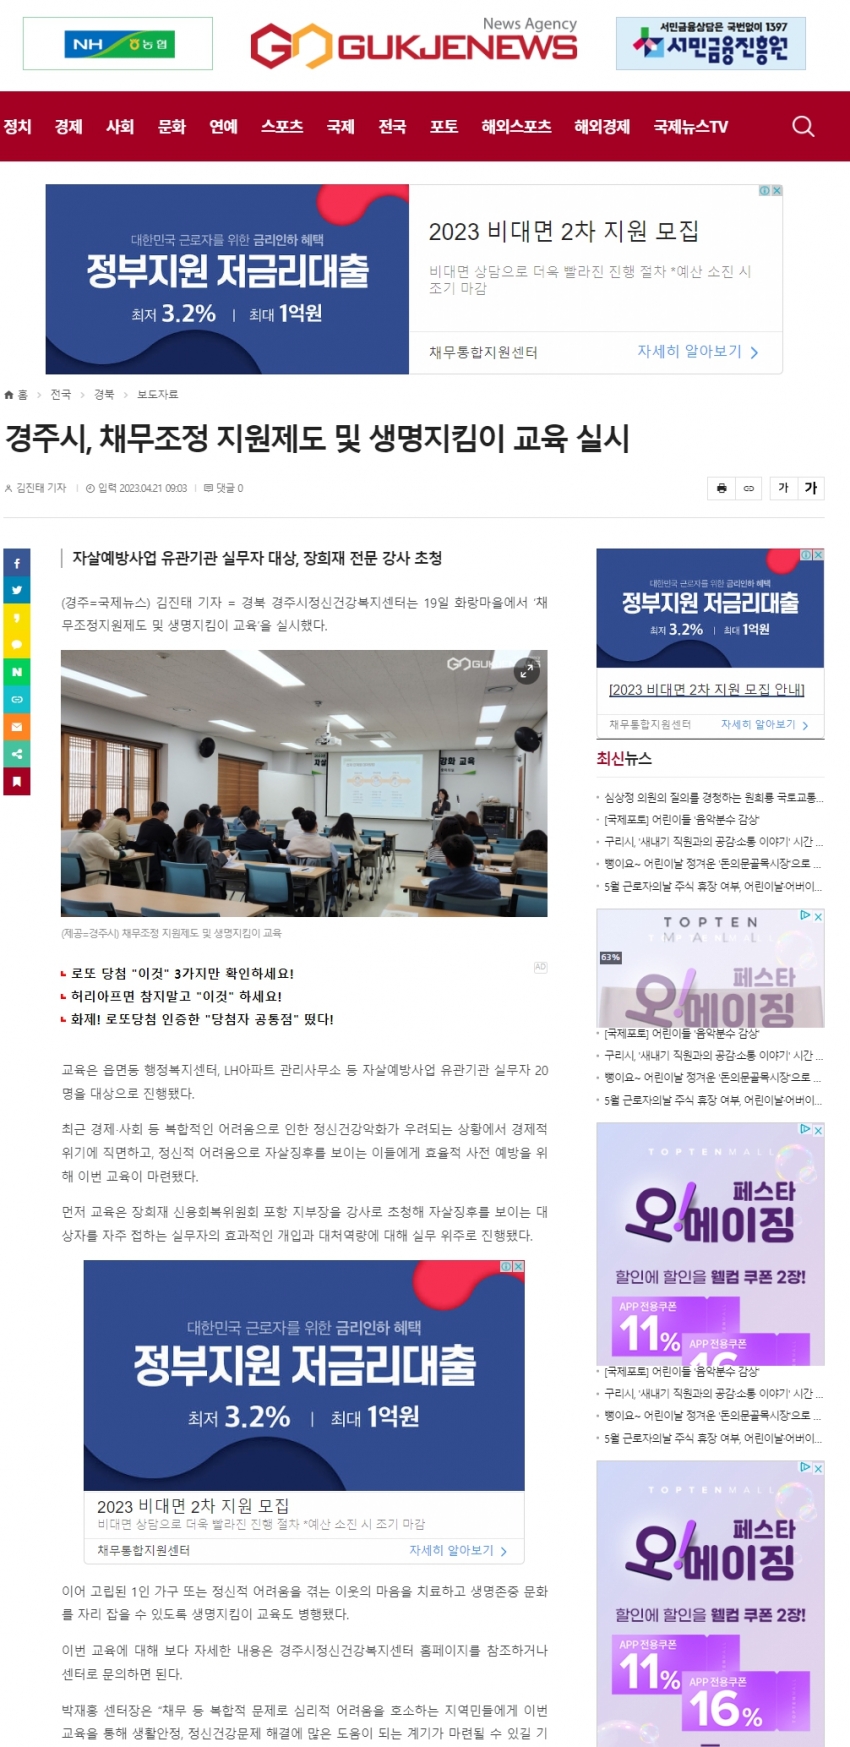 경주시, 채무조정 지원제도 및 생명지킴이 교육 실시_국제뉴스.jpg